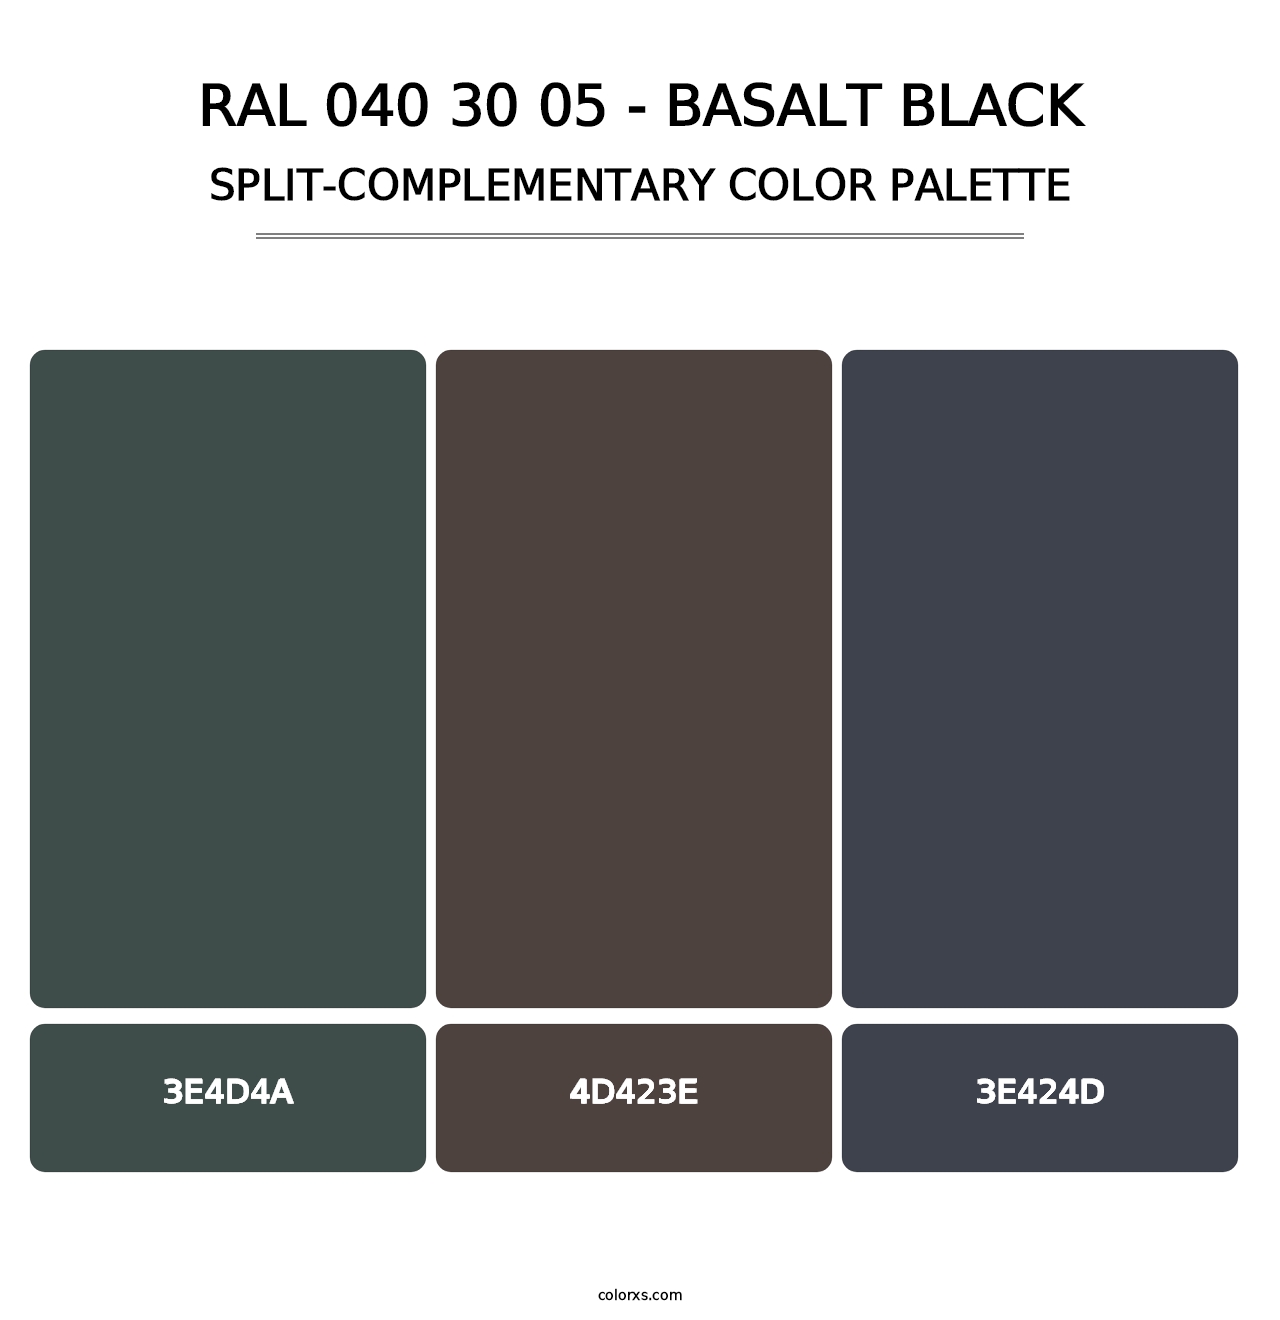 RAL 040 30 05 - Basalt Black - Split-Complementary Color Palette